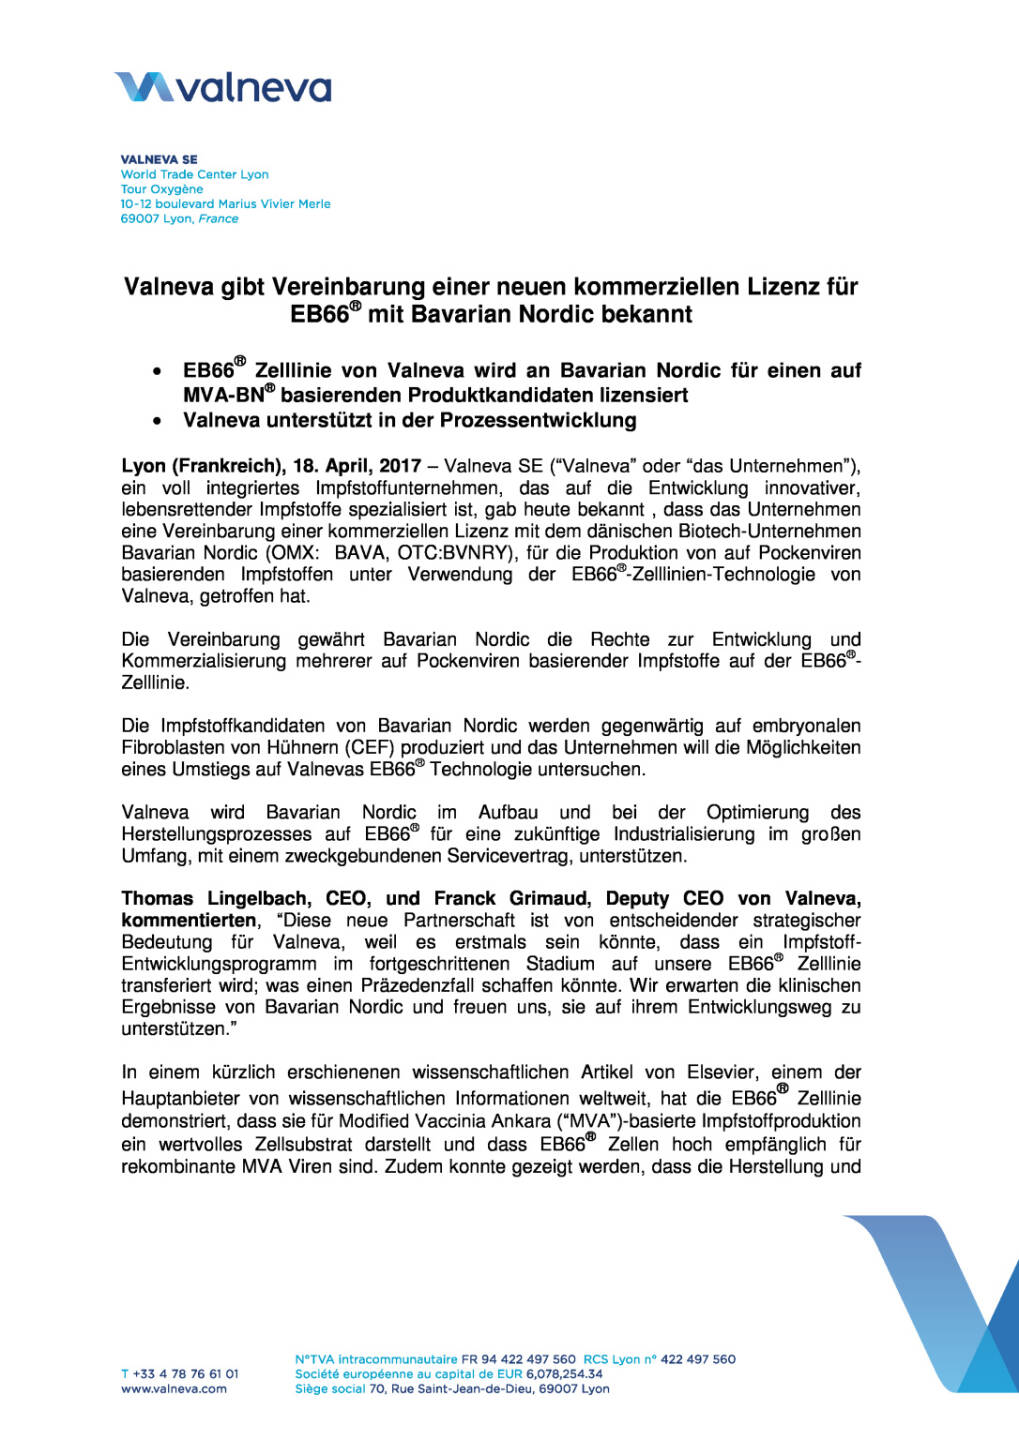 Valneva gibt Vereinbarung einer neuen kommerziellen Lizenz für EB66® mit Bavarian Nordic bekannt, Seite 1/4, komplettes Dokument unter http://boerse-social.com/static/uploads/file_2211_valneva_gibt_vereinbarung_einer_neuen_kommerziellen_lizenz_fur_eb66_bekannt.pdf